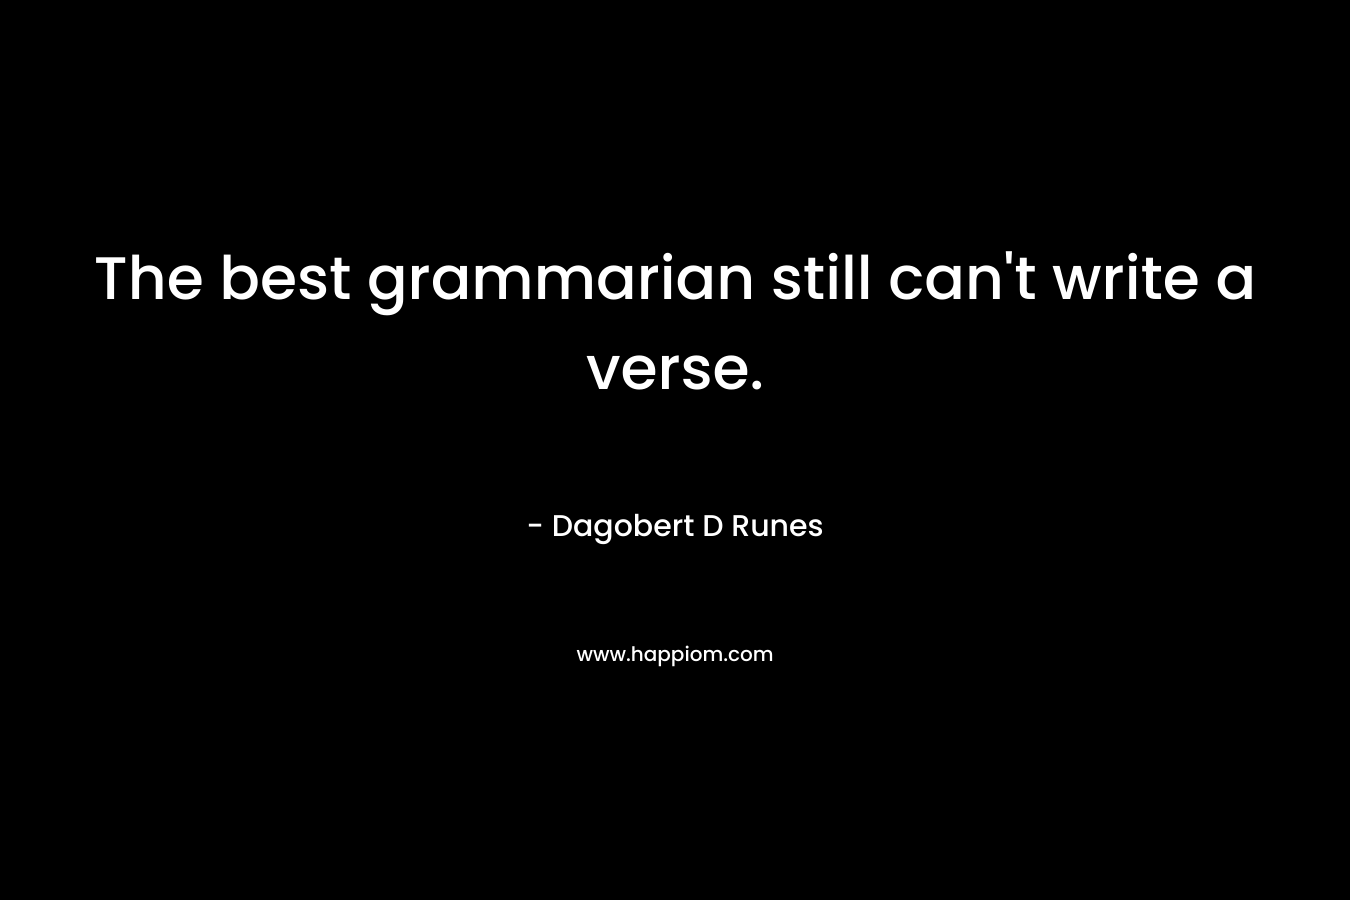 The best grammarian still can’t write a verse. – Dagobert D Runes